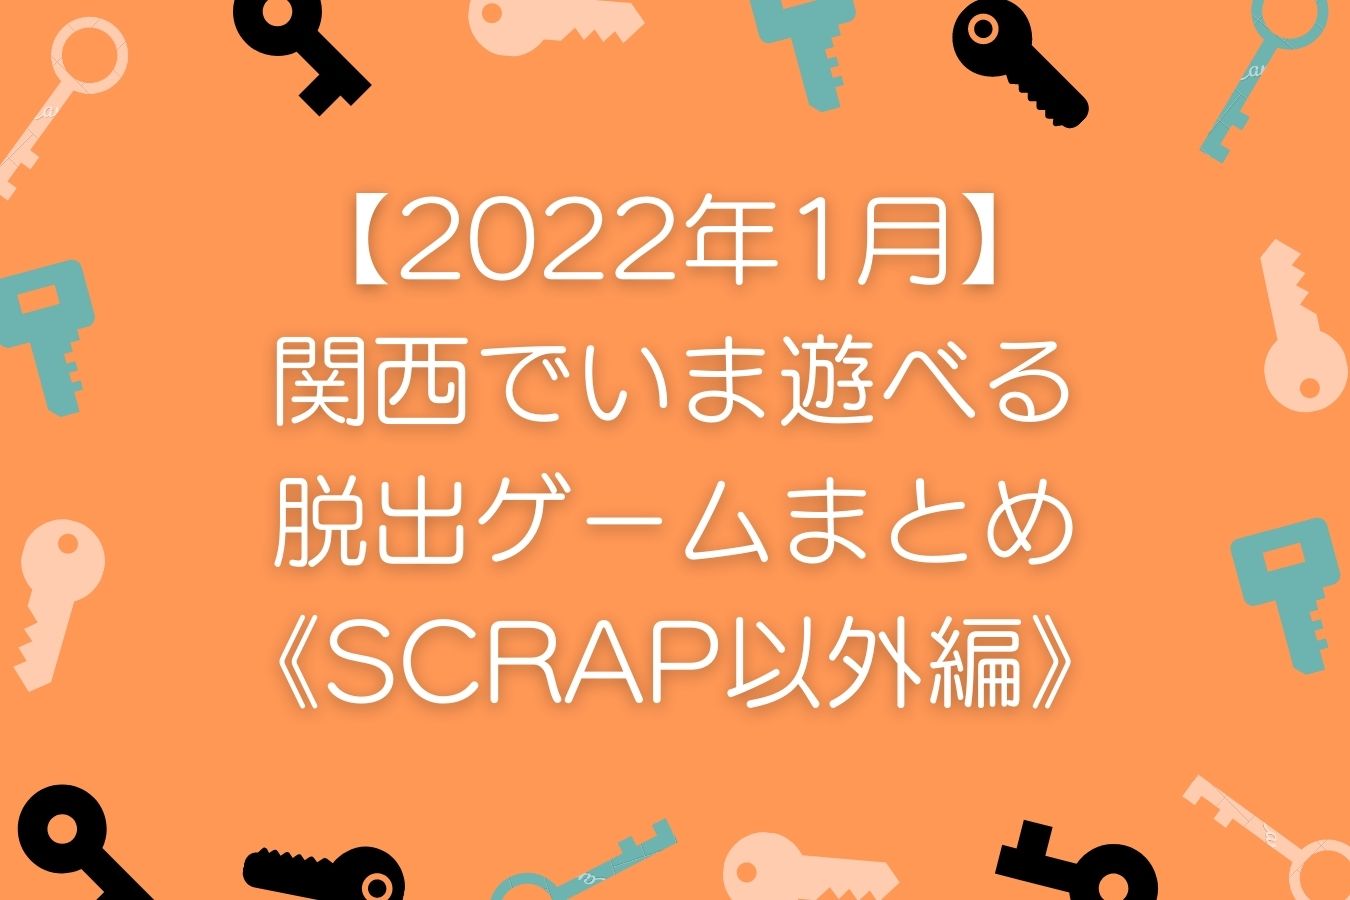 【2022年1月】関西でいま遊べる脱出ゲームまとめ《SCRAP以外編》